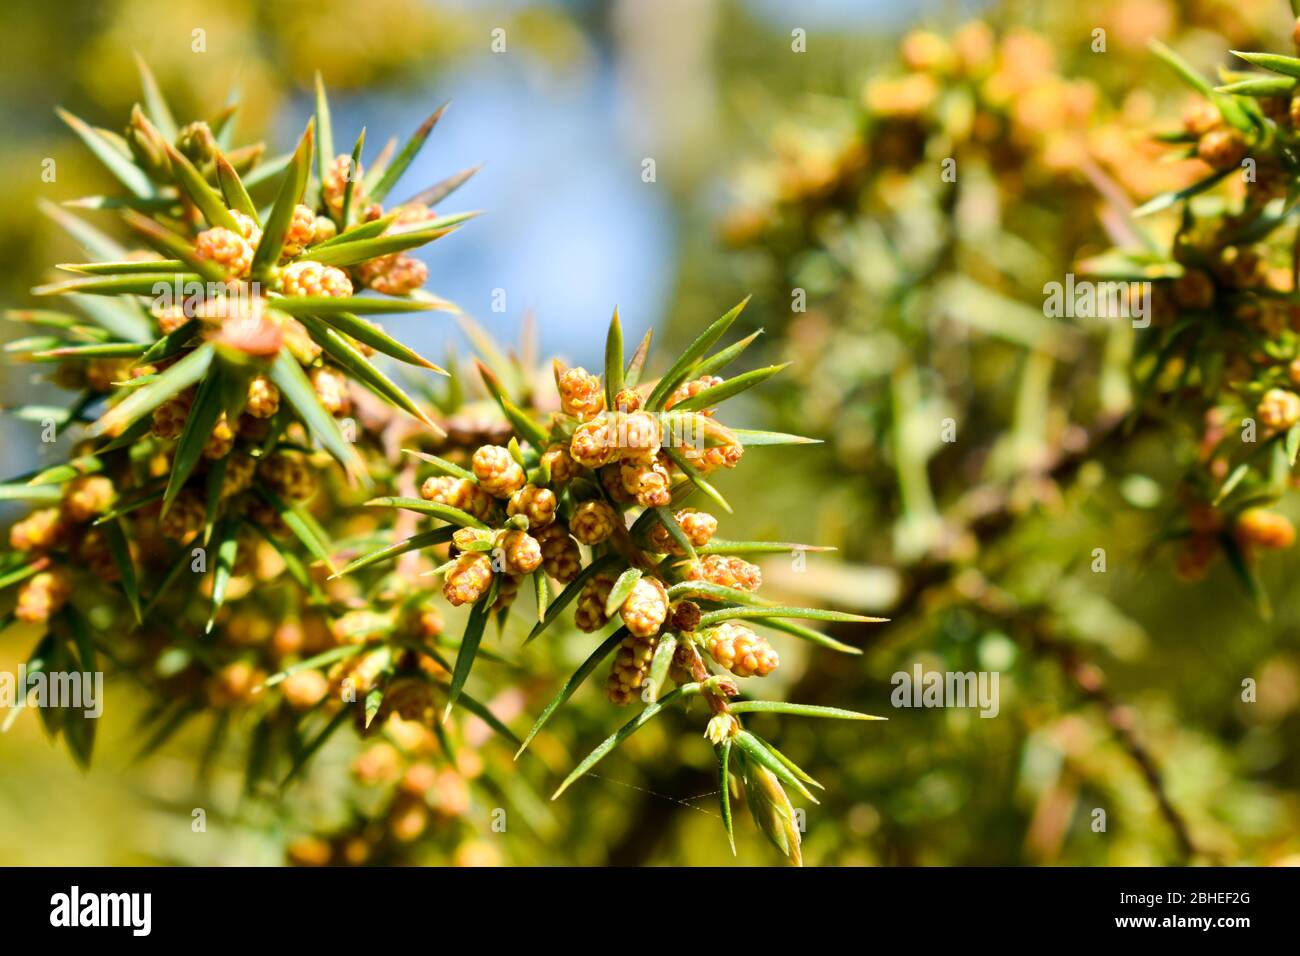 The common juniper ( Juniperus communis). Stock Photo